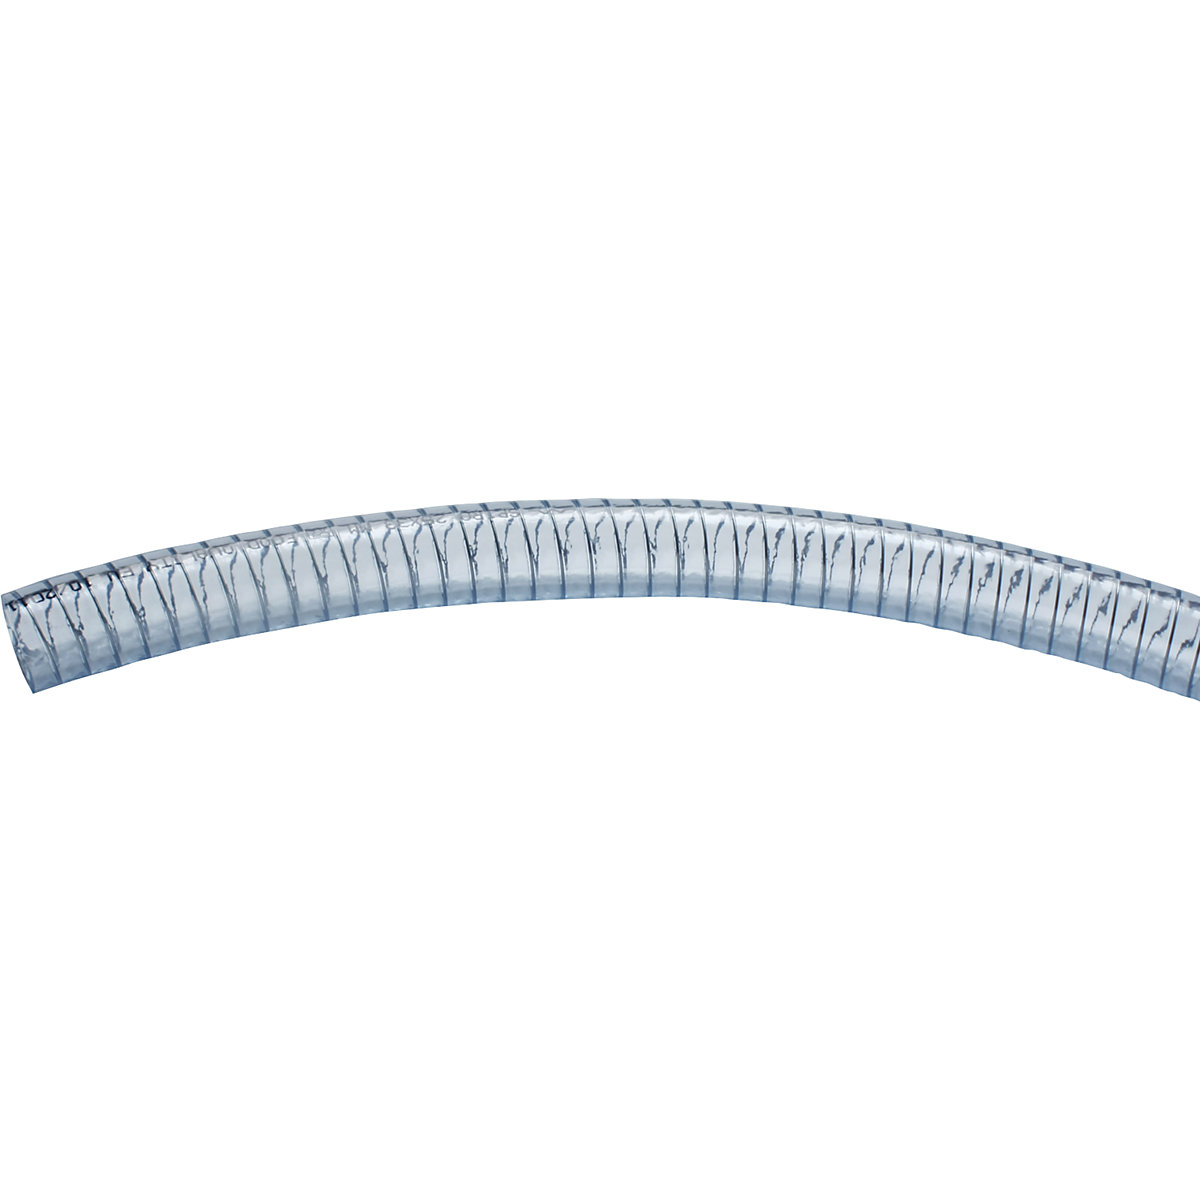 Tubo flessibile in PVC, trasparente con spirale in acciaio - Jessberger